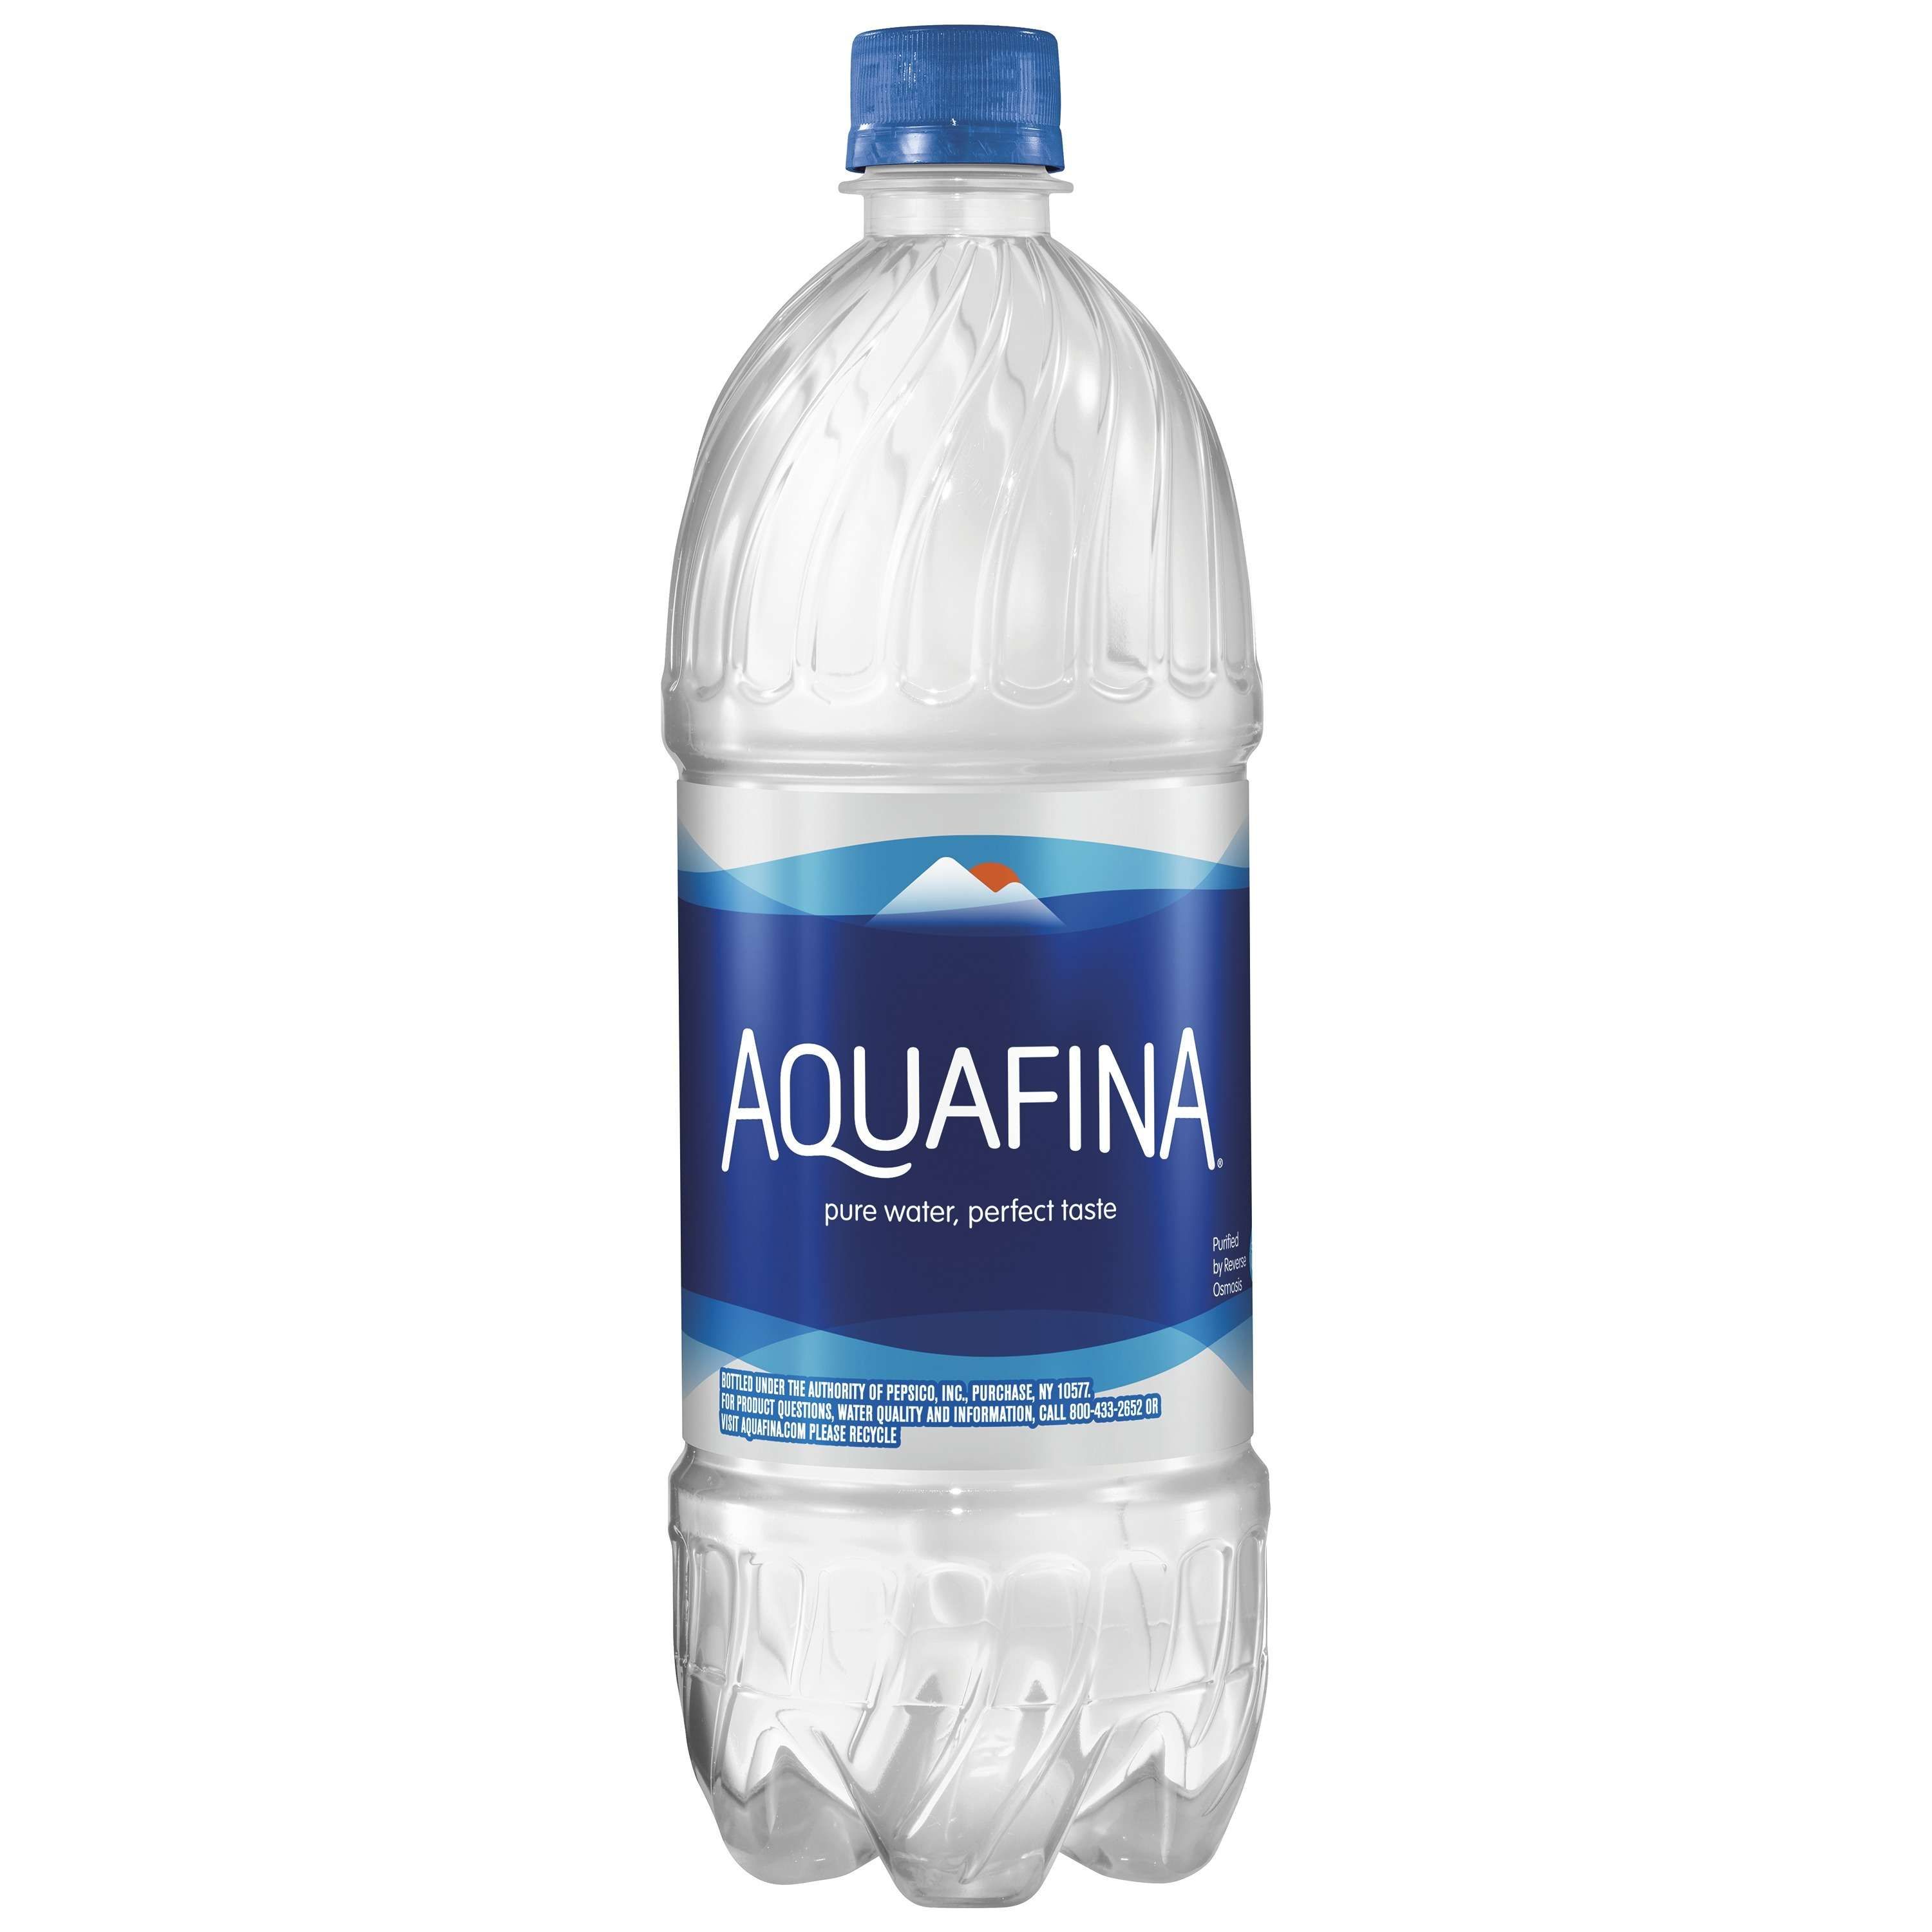 Pictures of aquafina